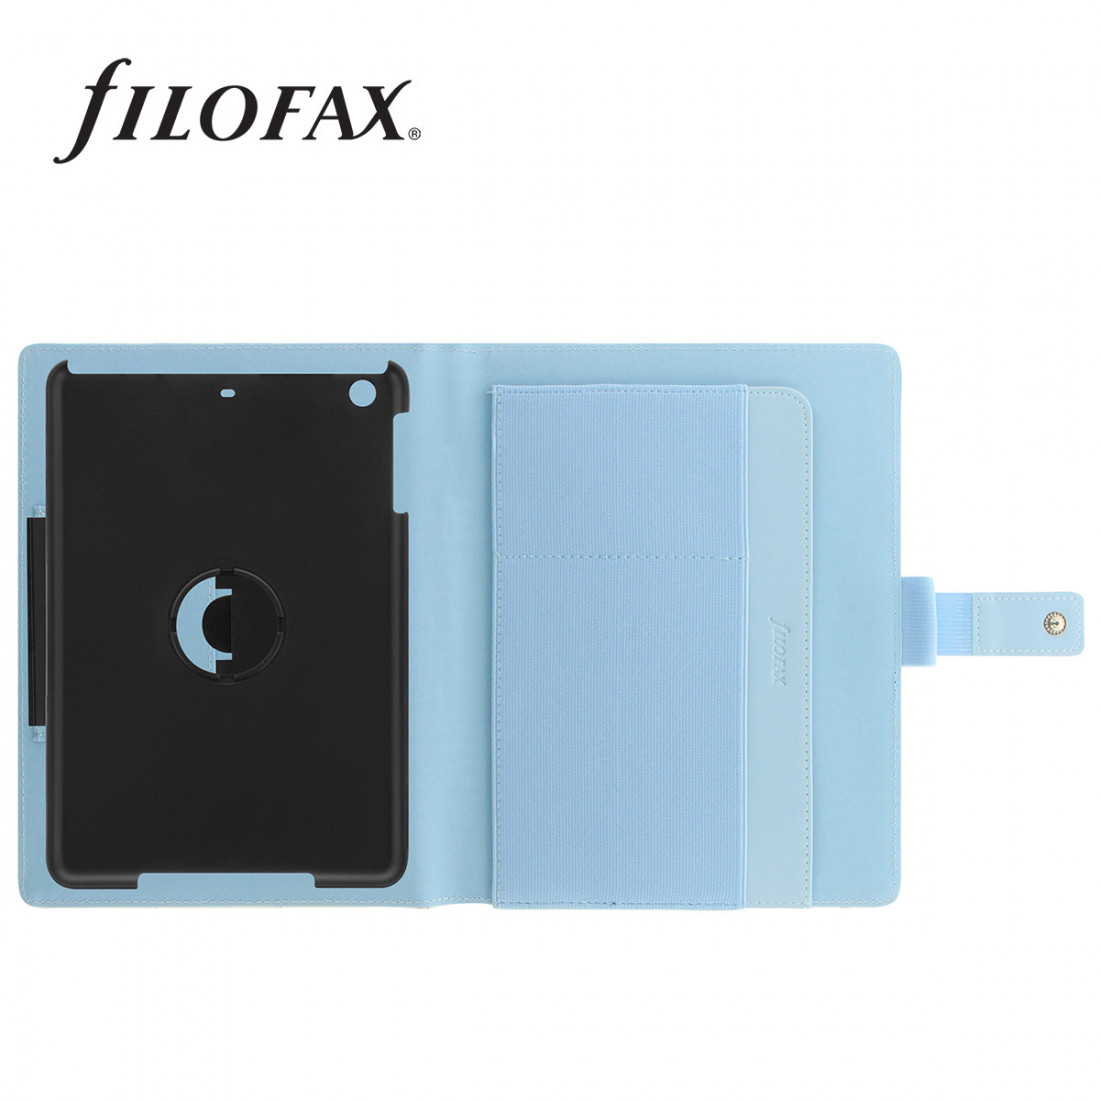 Filofax Tablet Case, Cover, small, Retro Map strap